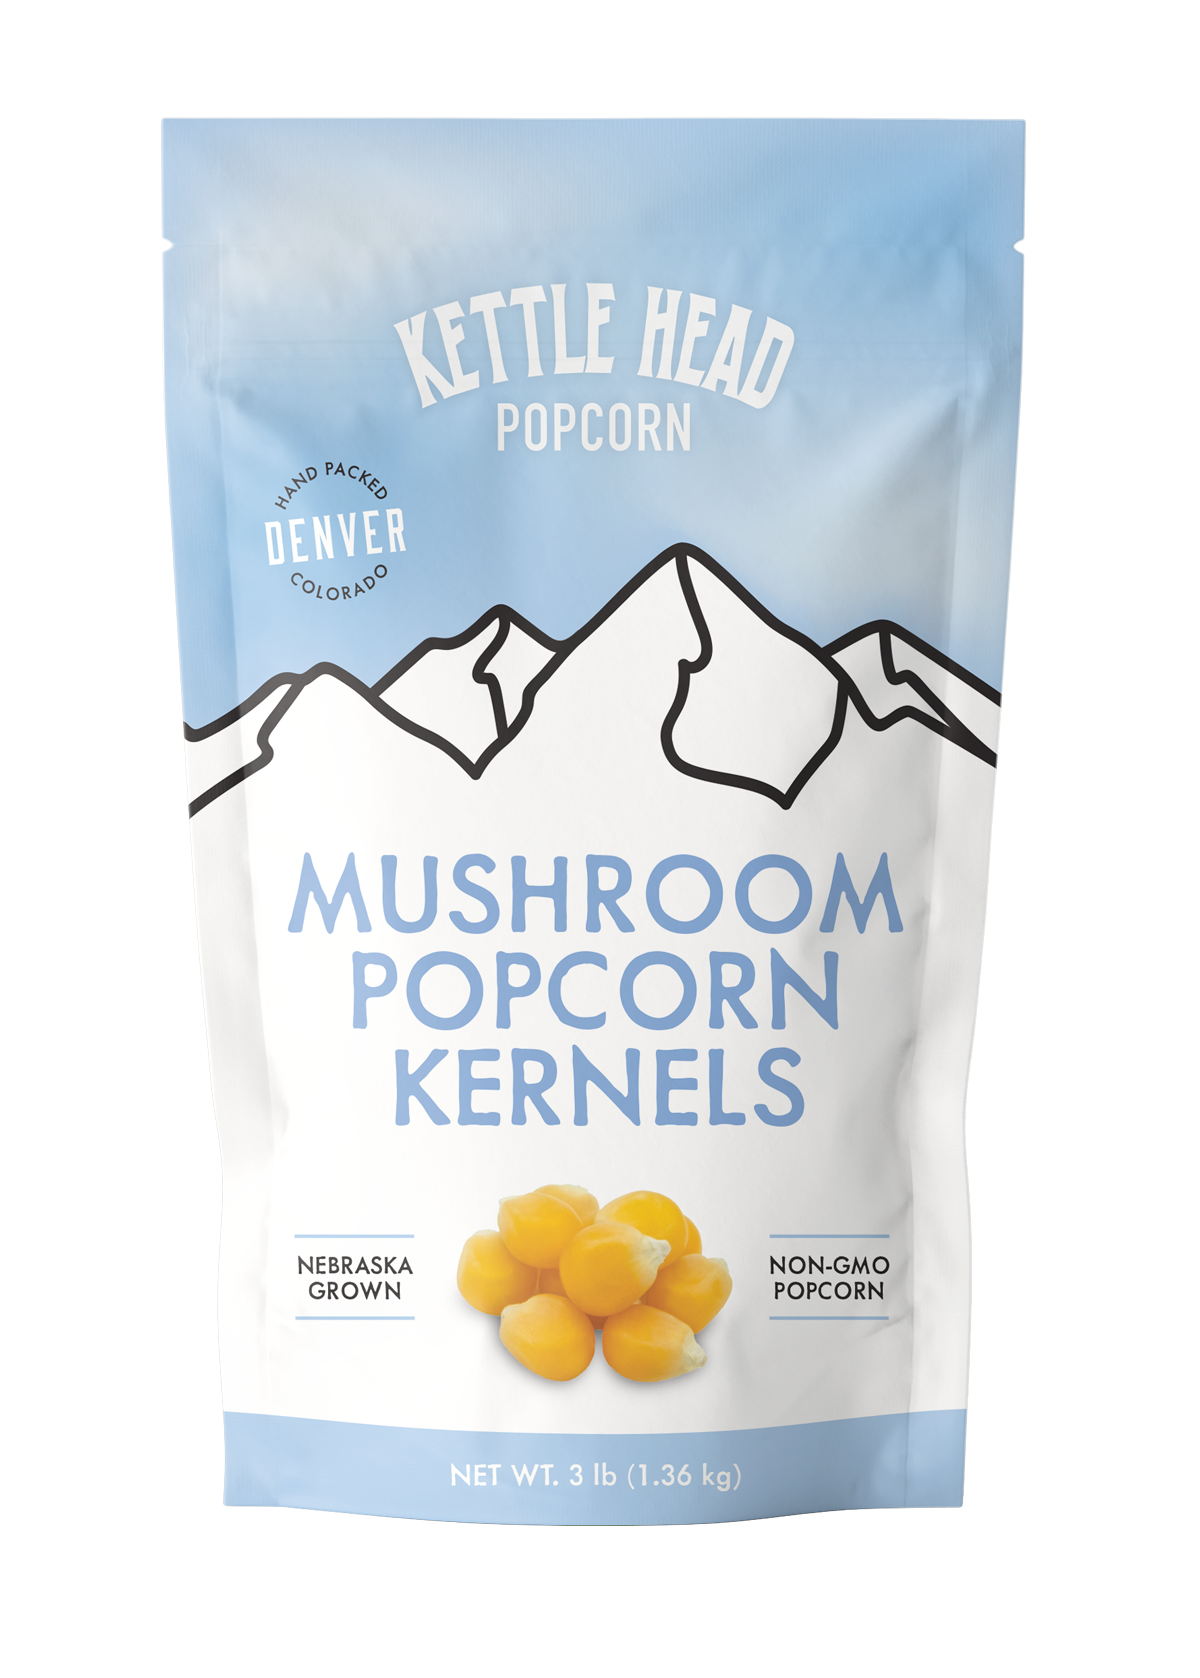 Mushroom popcorn